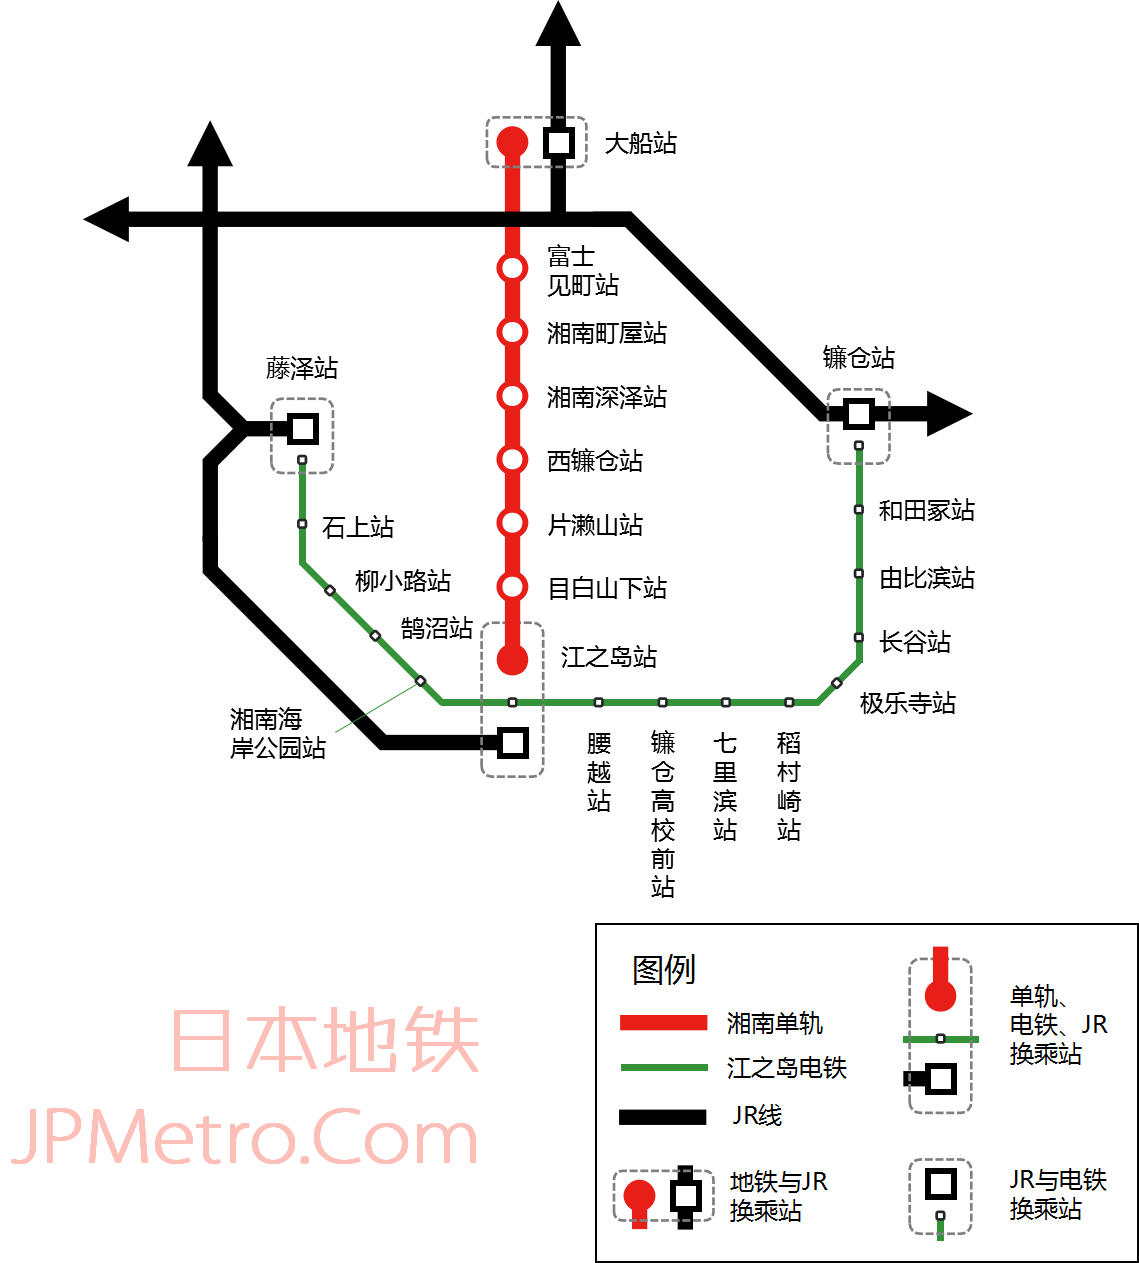 福冈地铁-日本地铁